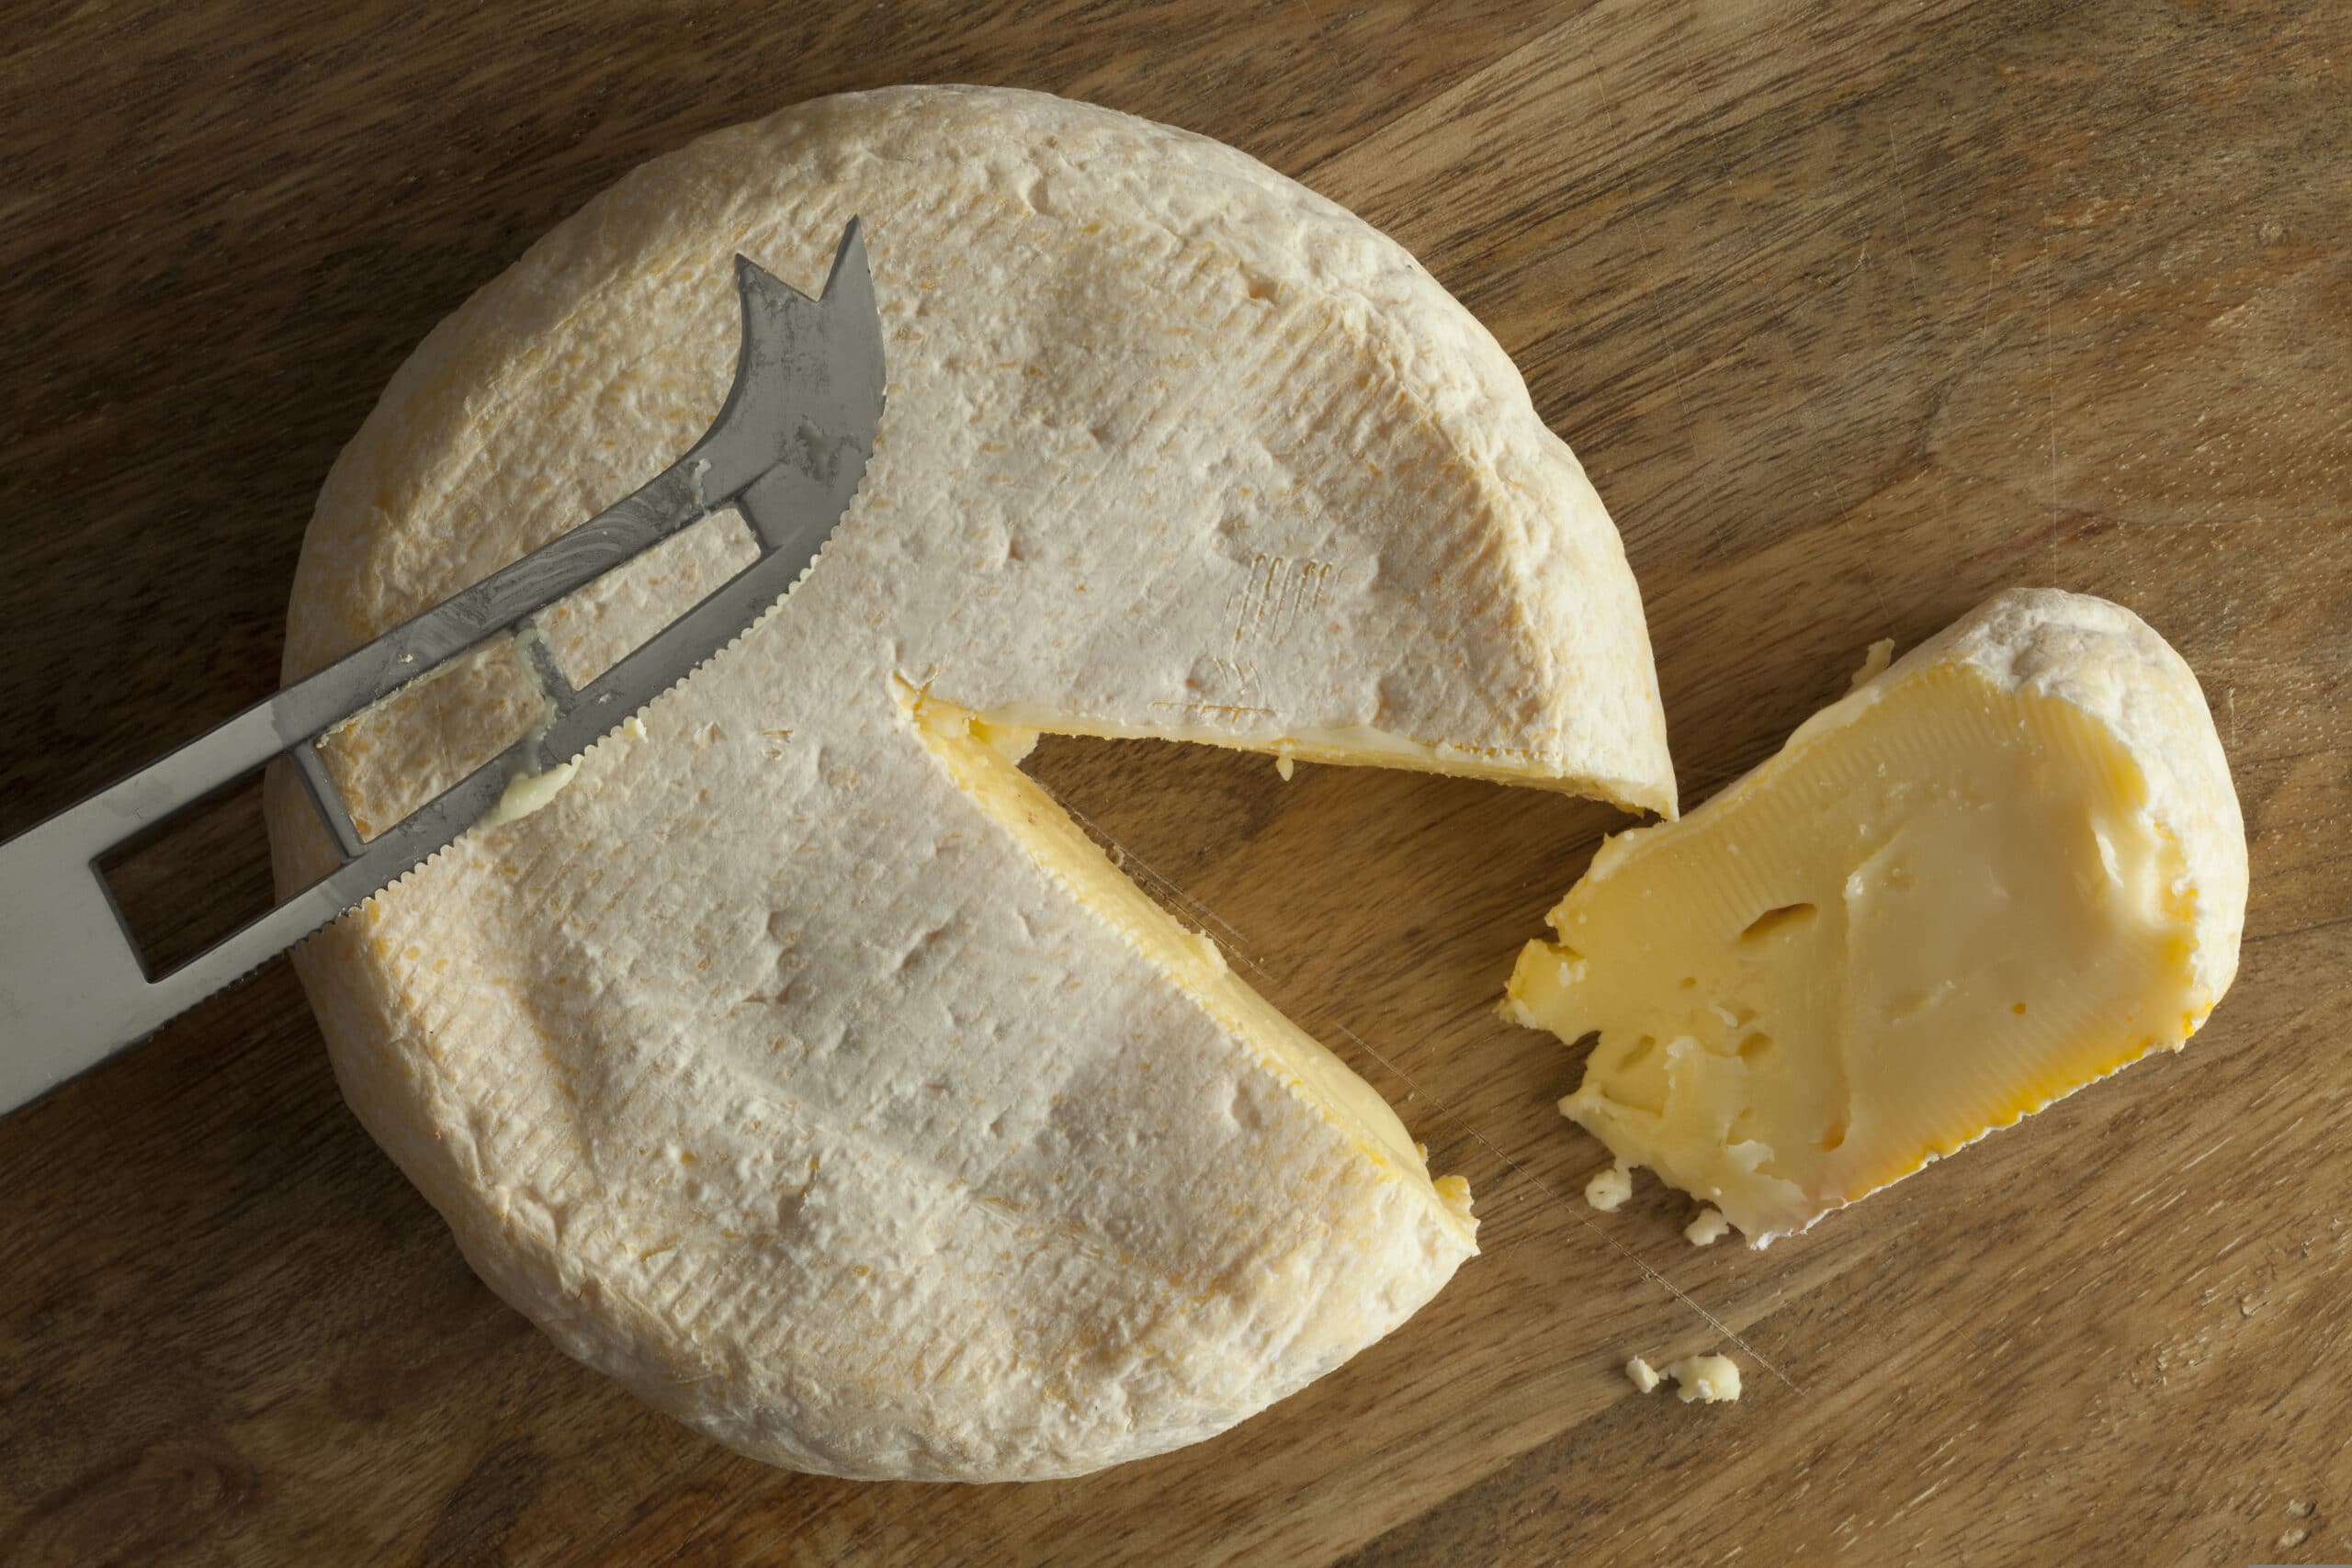 Reblochon de Savoie cheese with a slice